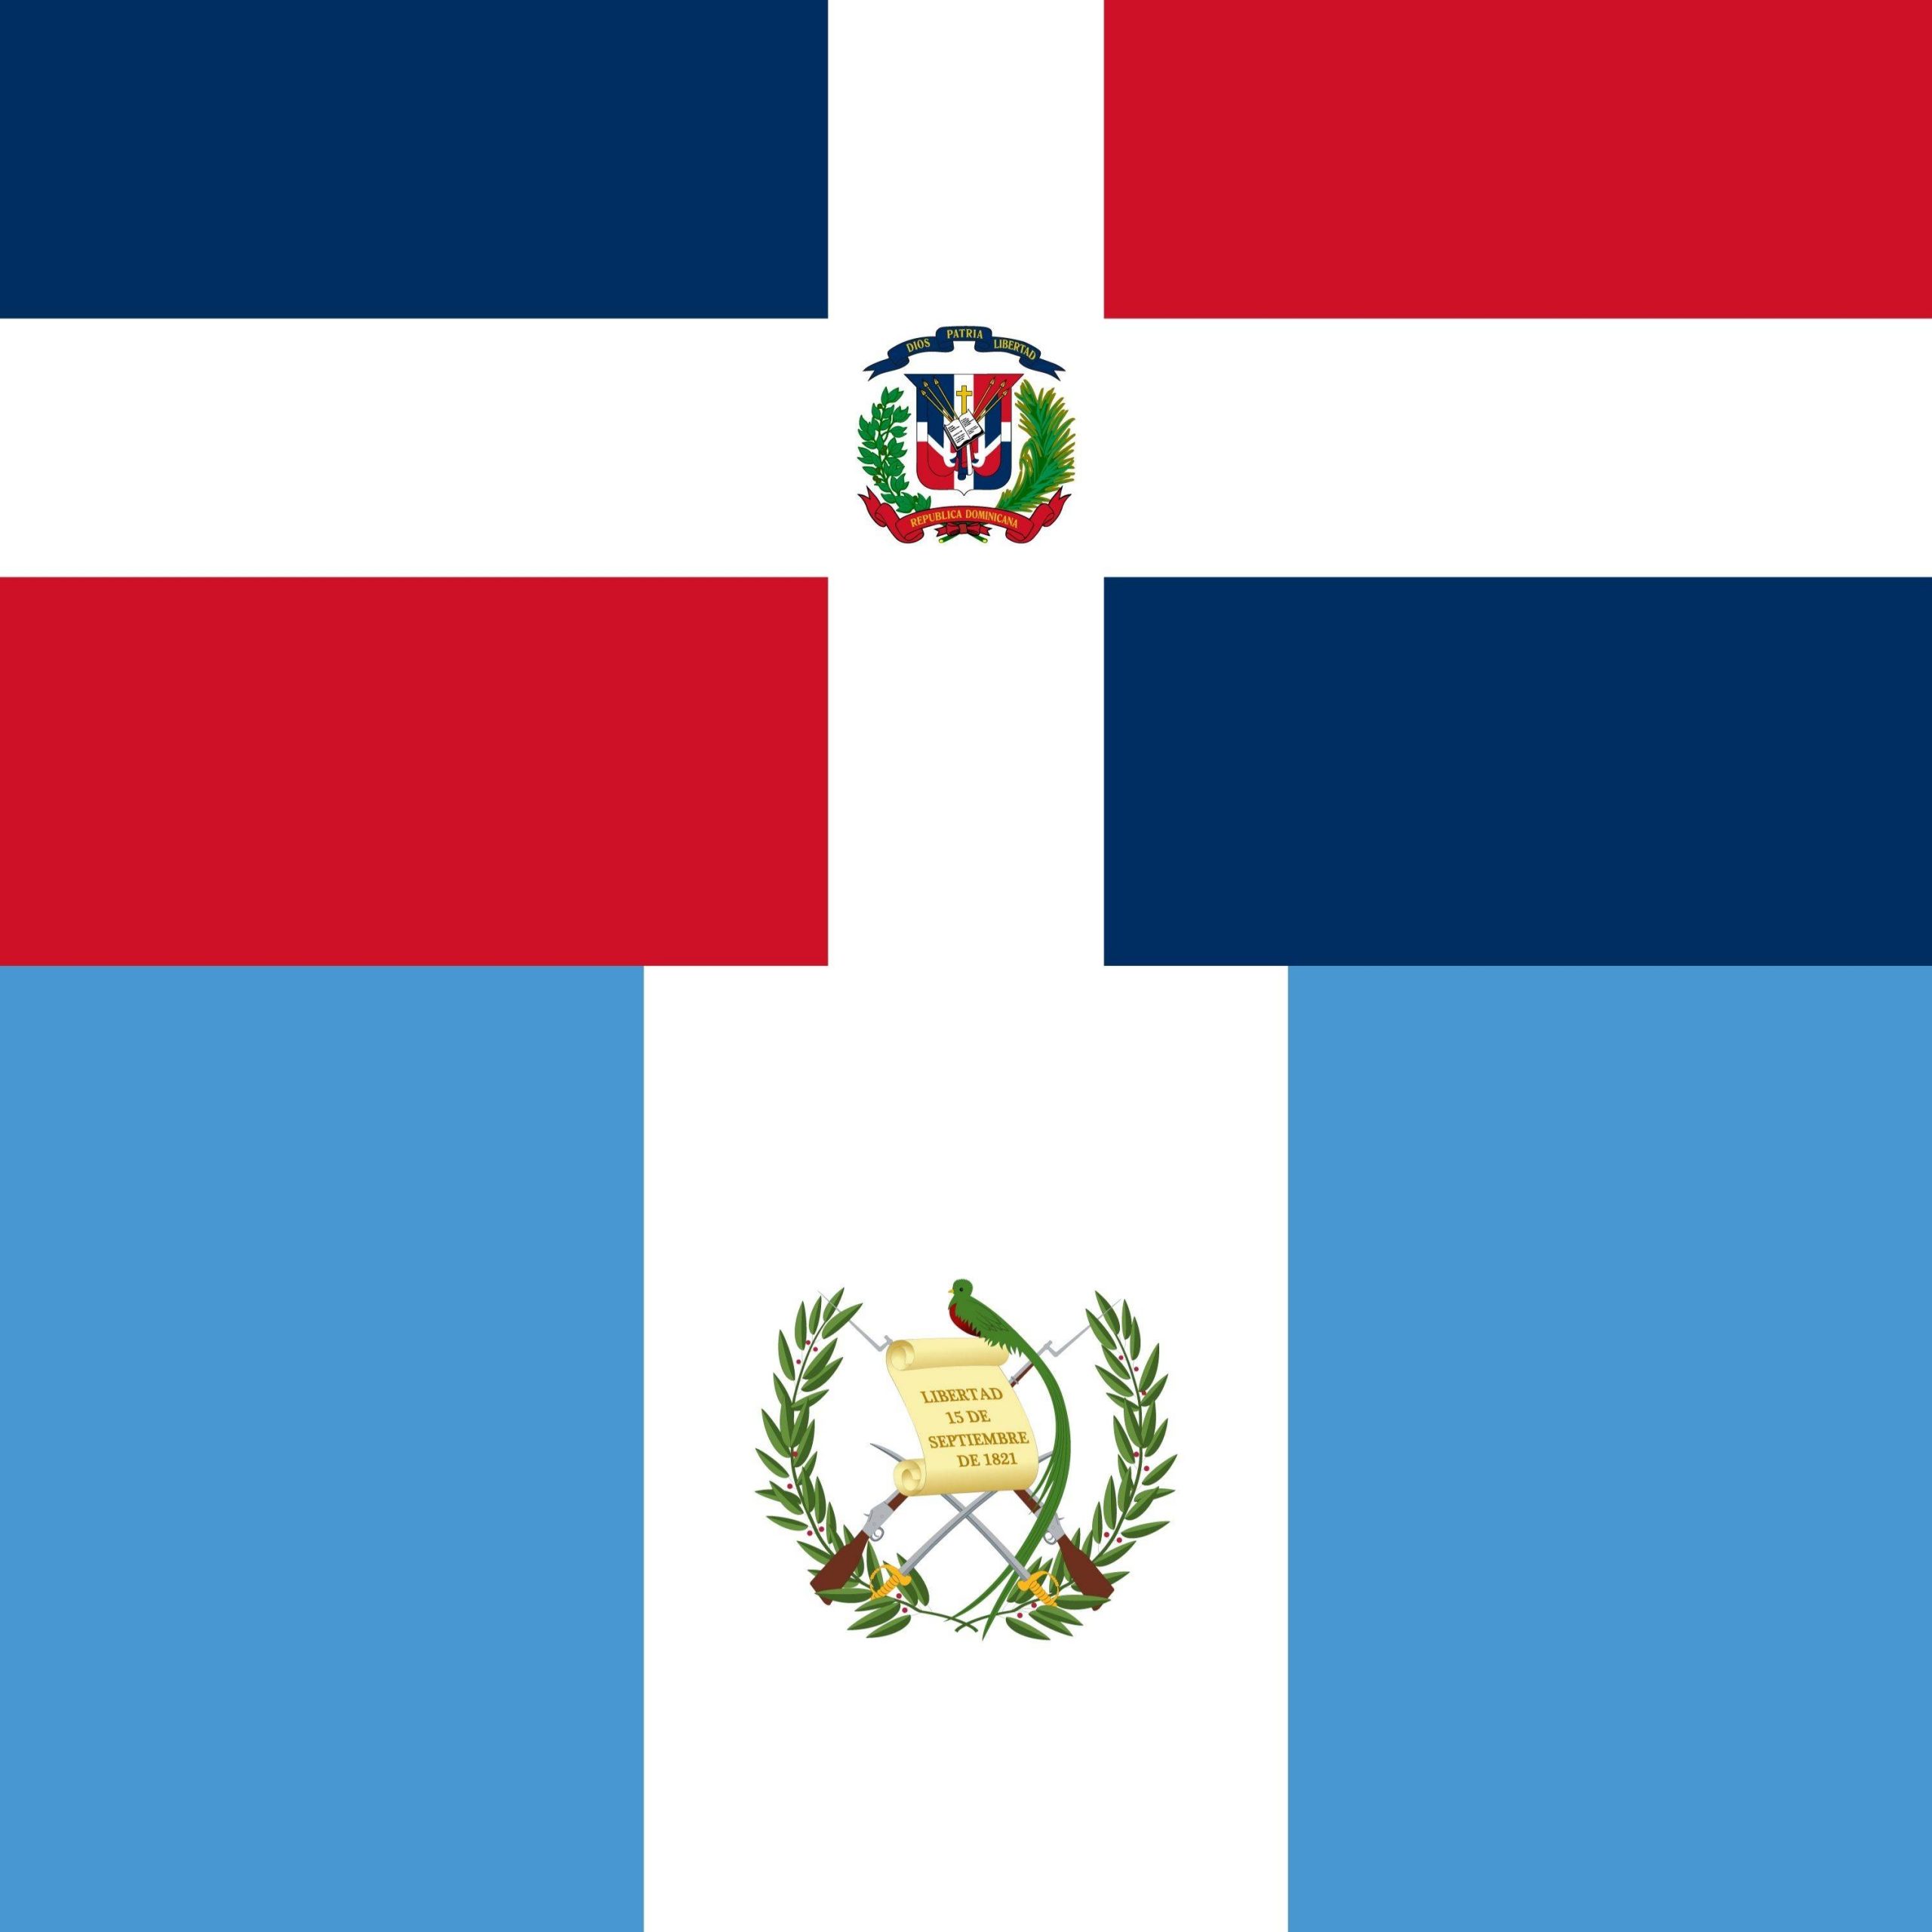 Dominican Republic vs Guatemala